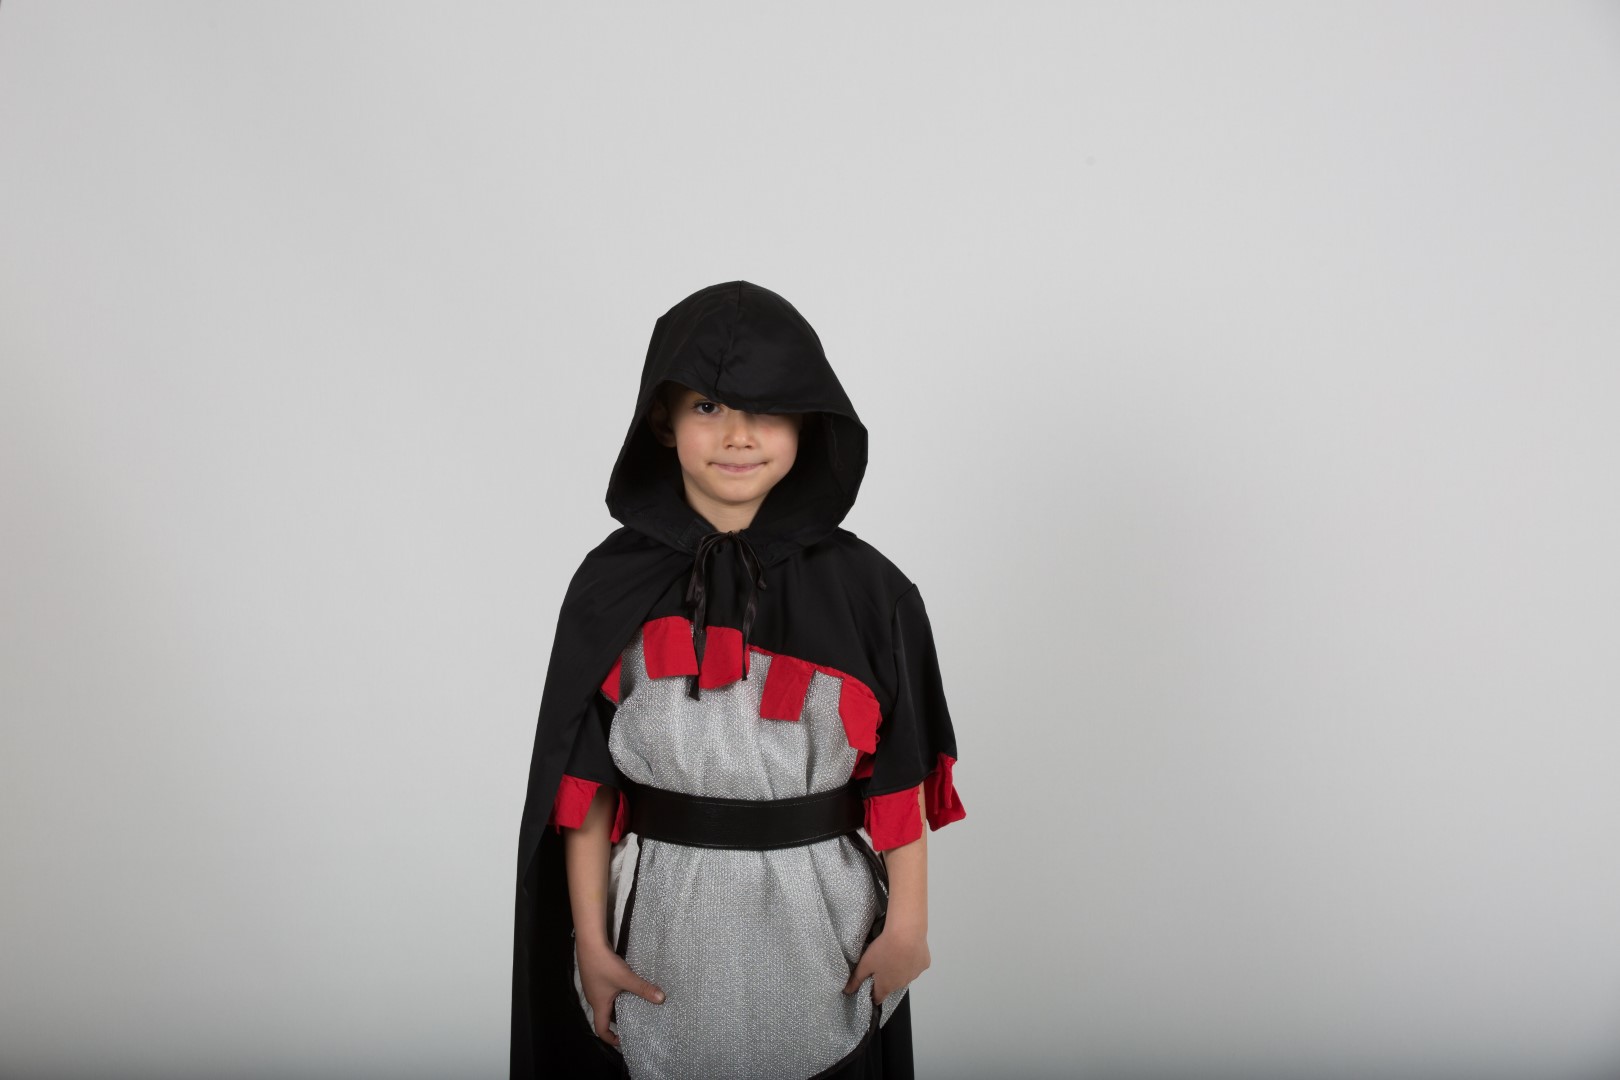 Çocuk Şövalya Kostümü